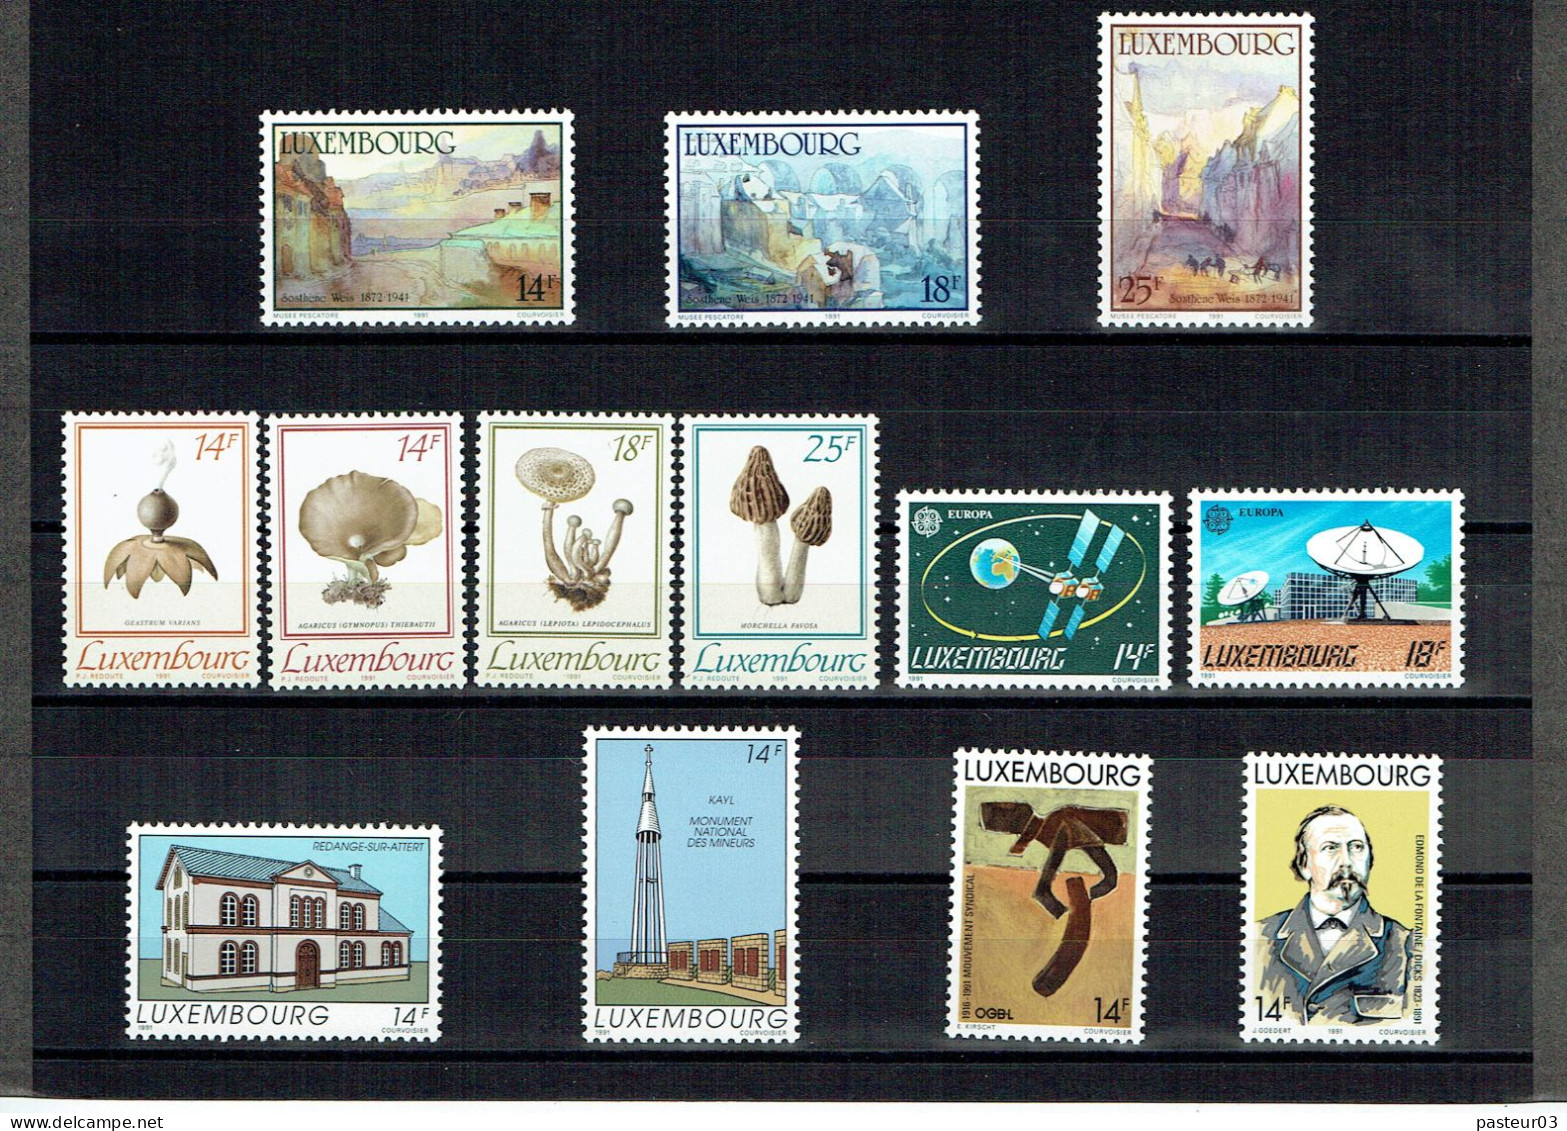 Luxembourg Joli Lot De 1989 à 1993 Présenté Dans Emballage Cartonné P & T Luxembourg Publicité Juvalux 1998 - Collections